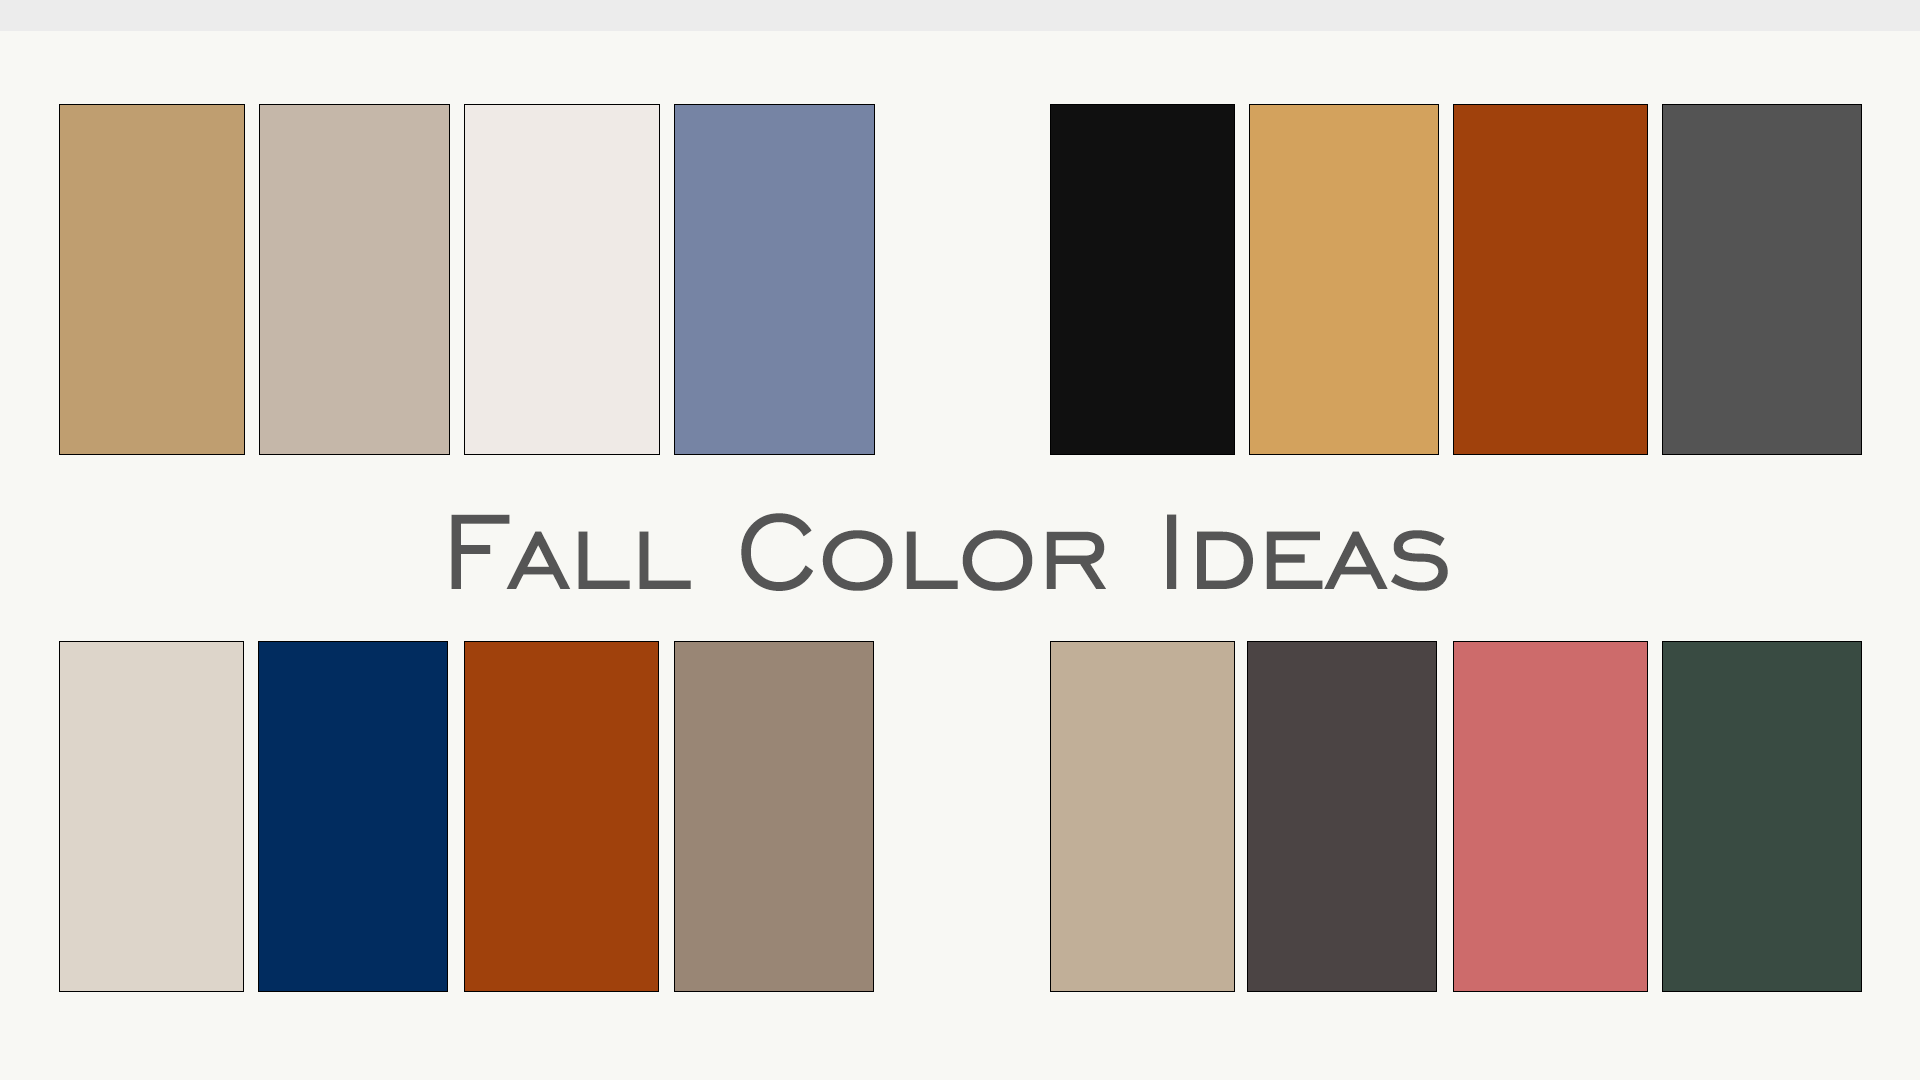 fall family photo color ideas